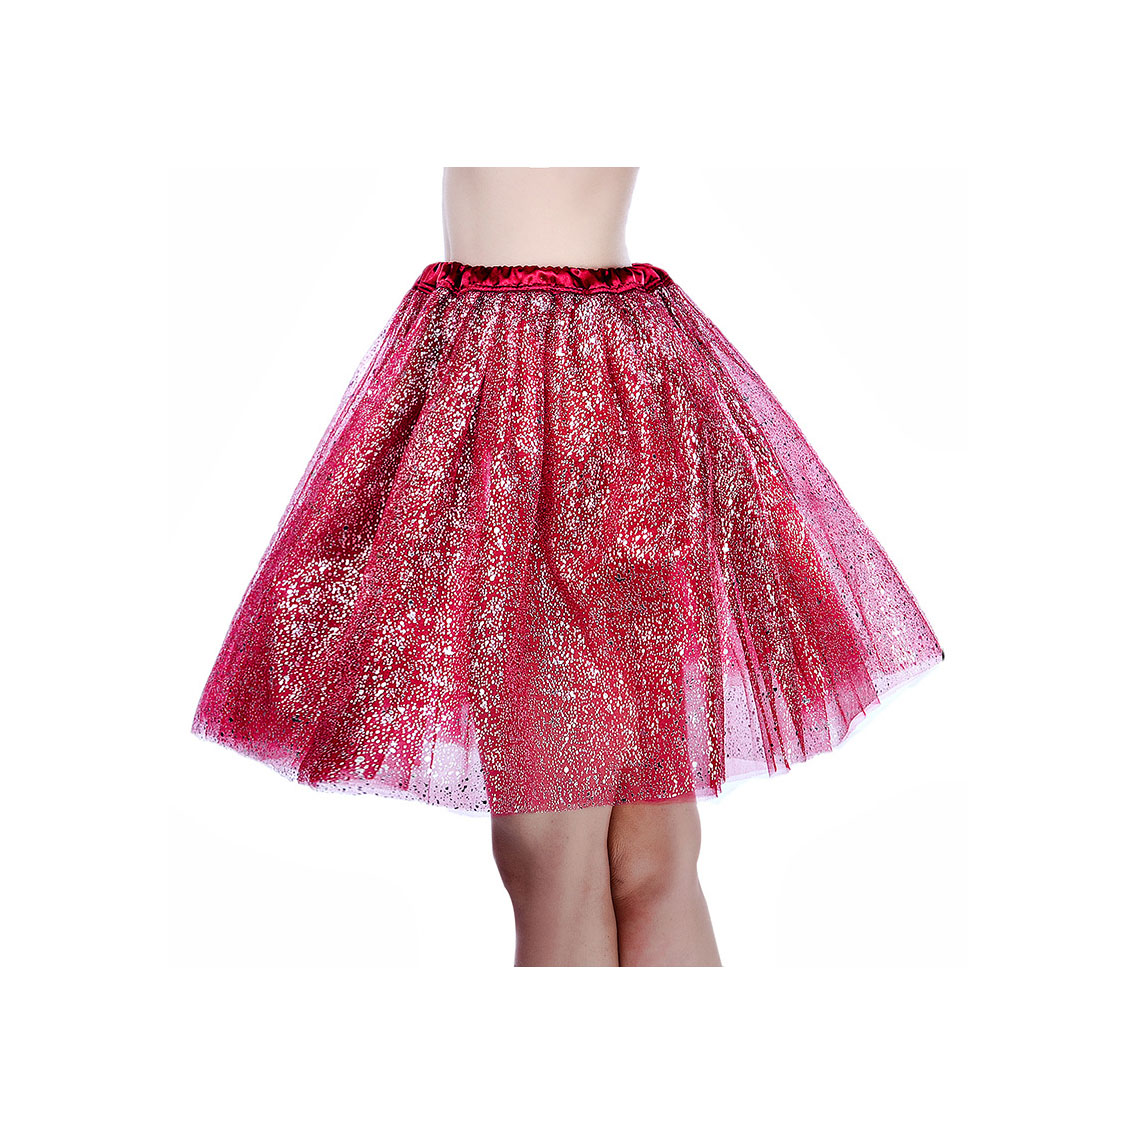 Adult Tutu Skirt Sequin Gilding Polka Dot 3 Layers Party Dance Ballet Pettiskirt Tulle Girl Mini Skirt burgundy